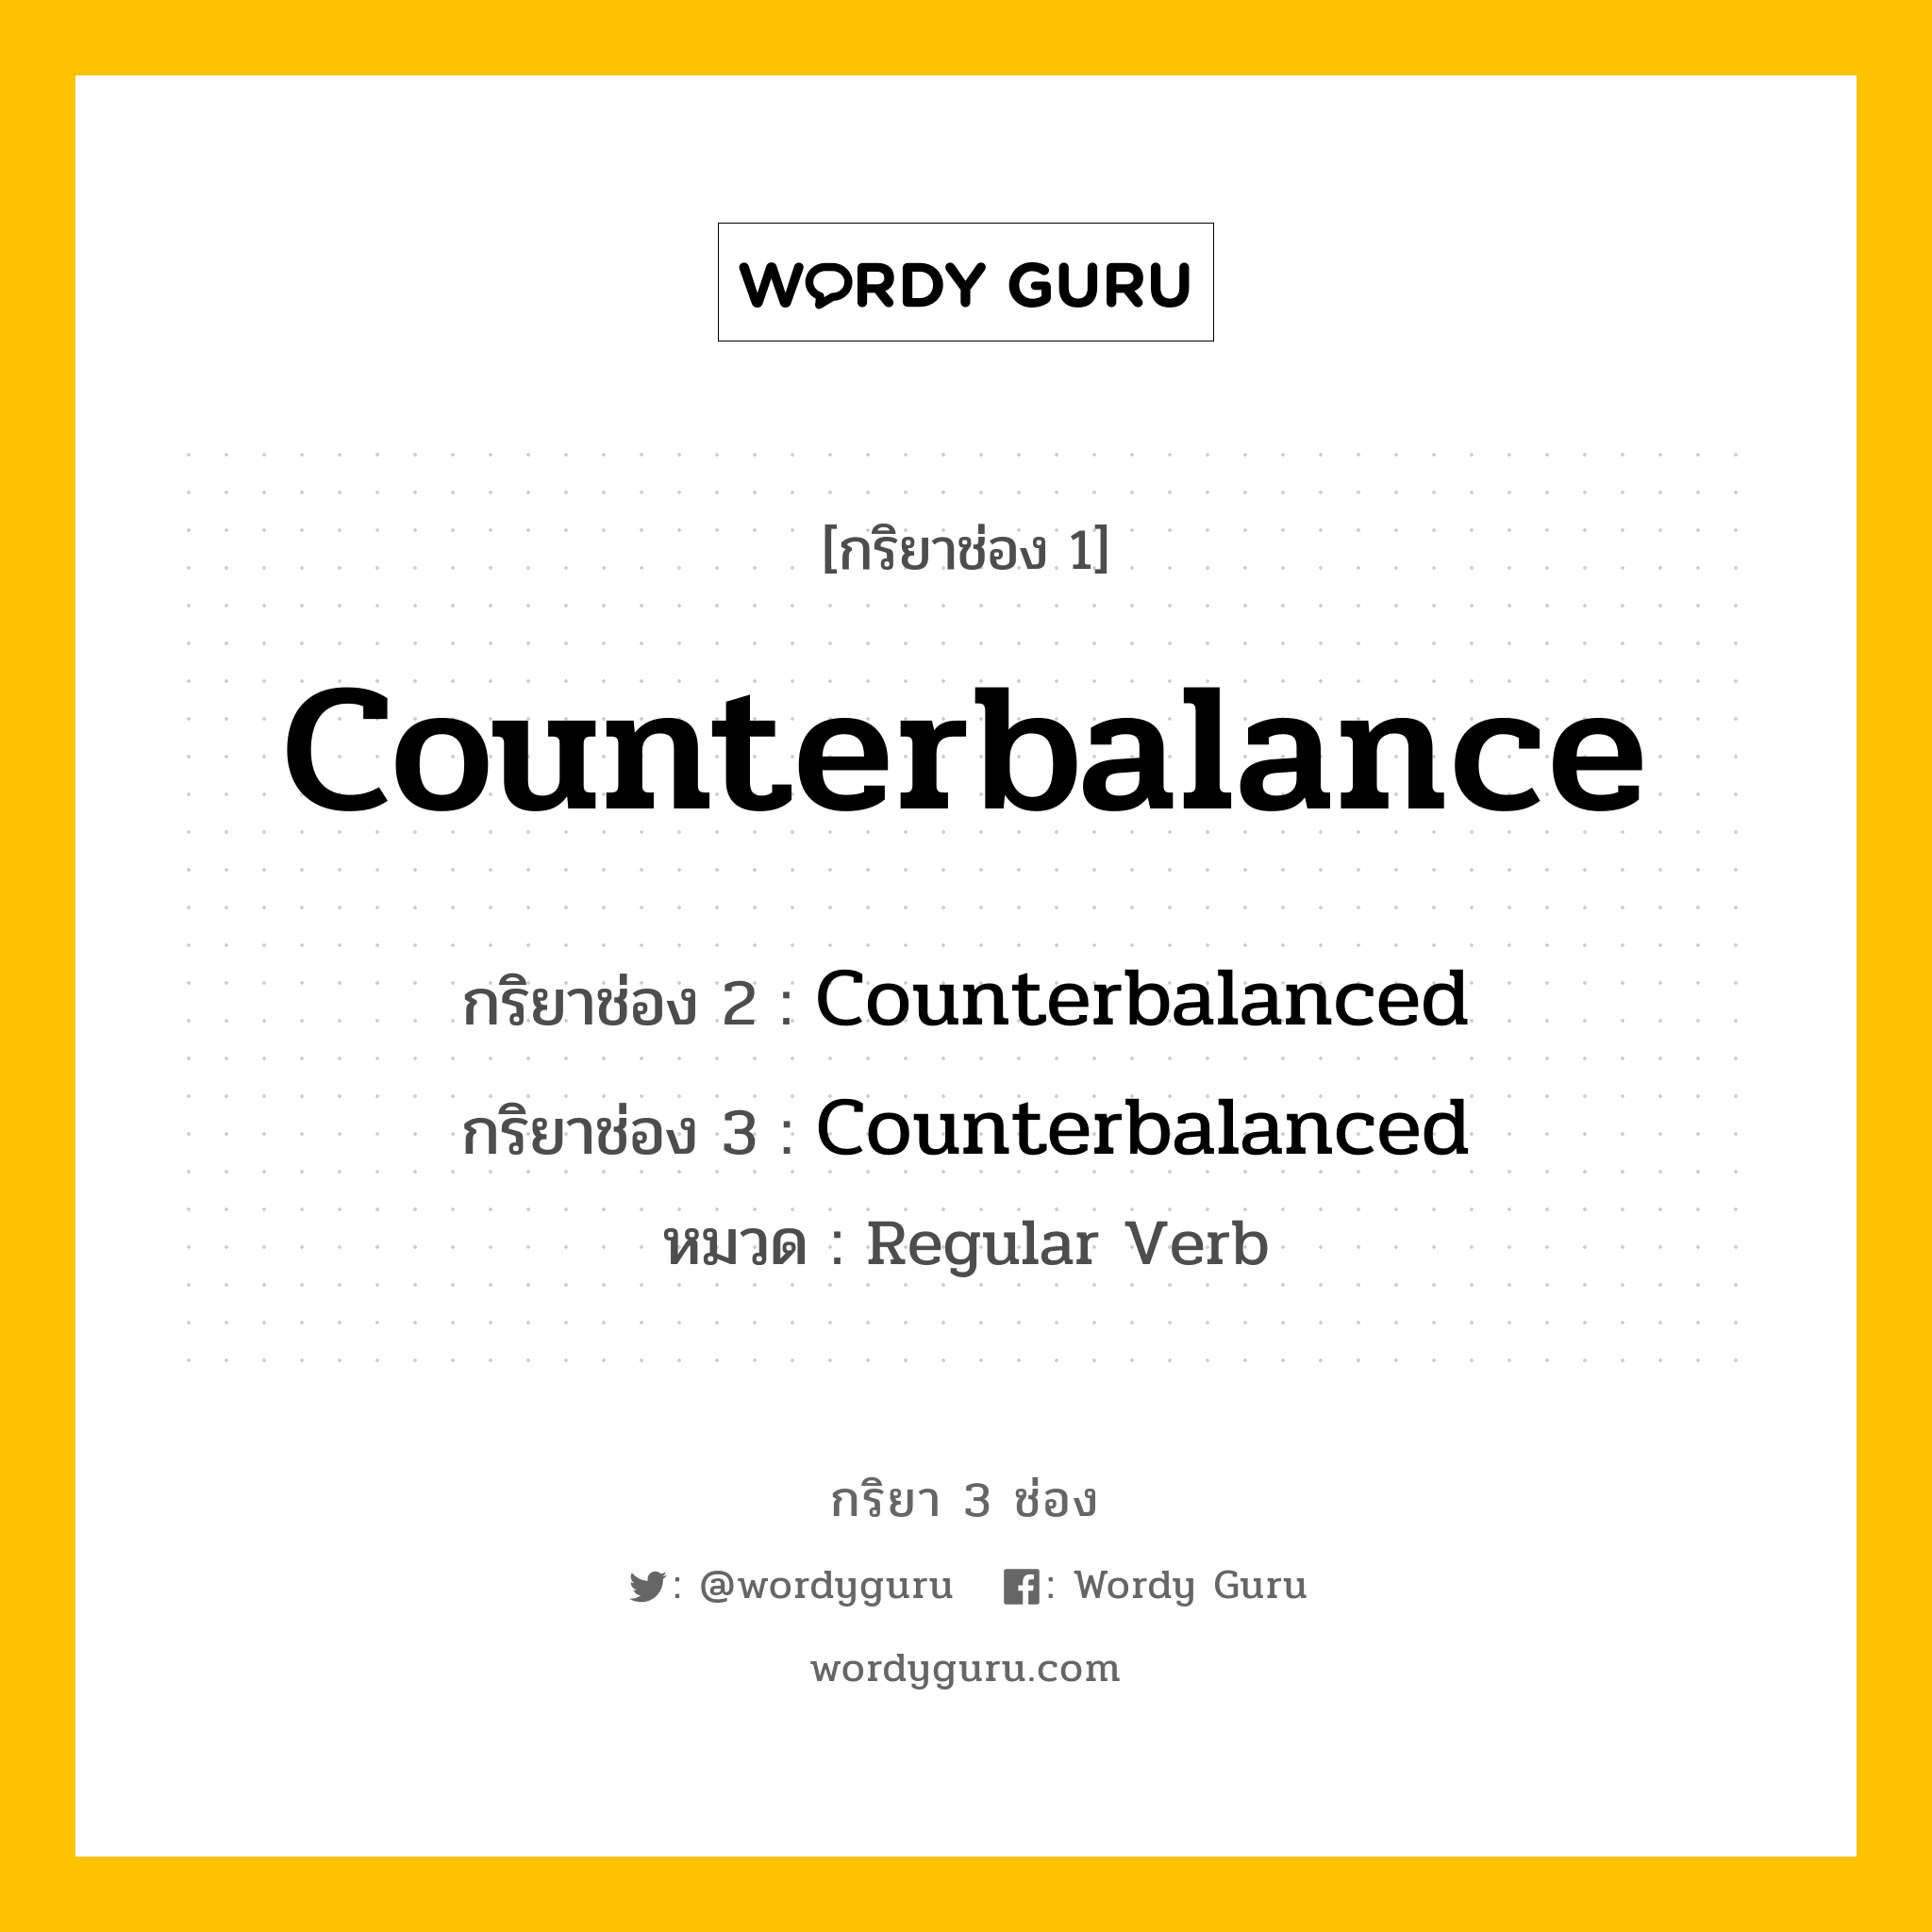 กริยา 3 ช่อง: Counterbalance ช่อง 2 Counterbalance ช่อง 3 คืออะไร, กริยาช่อง 1 Counterbalance กริยาช่อง 2 Counterbalanced กริยาช่อง 3 Counterbalanced หมวด Regular Verb หมวด Regular Verb